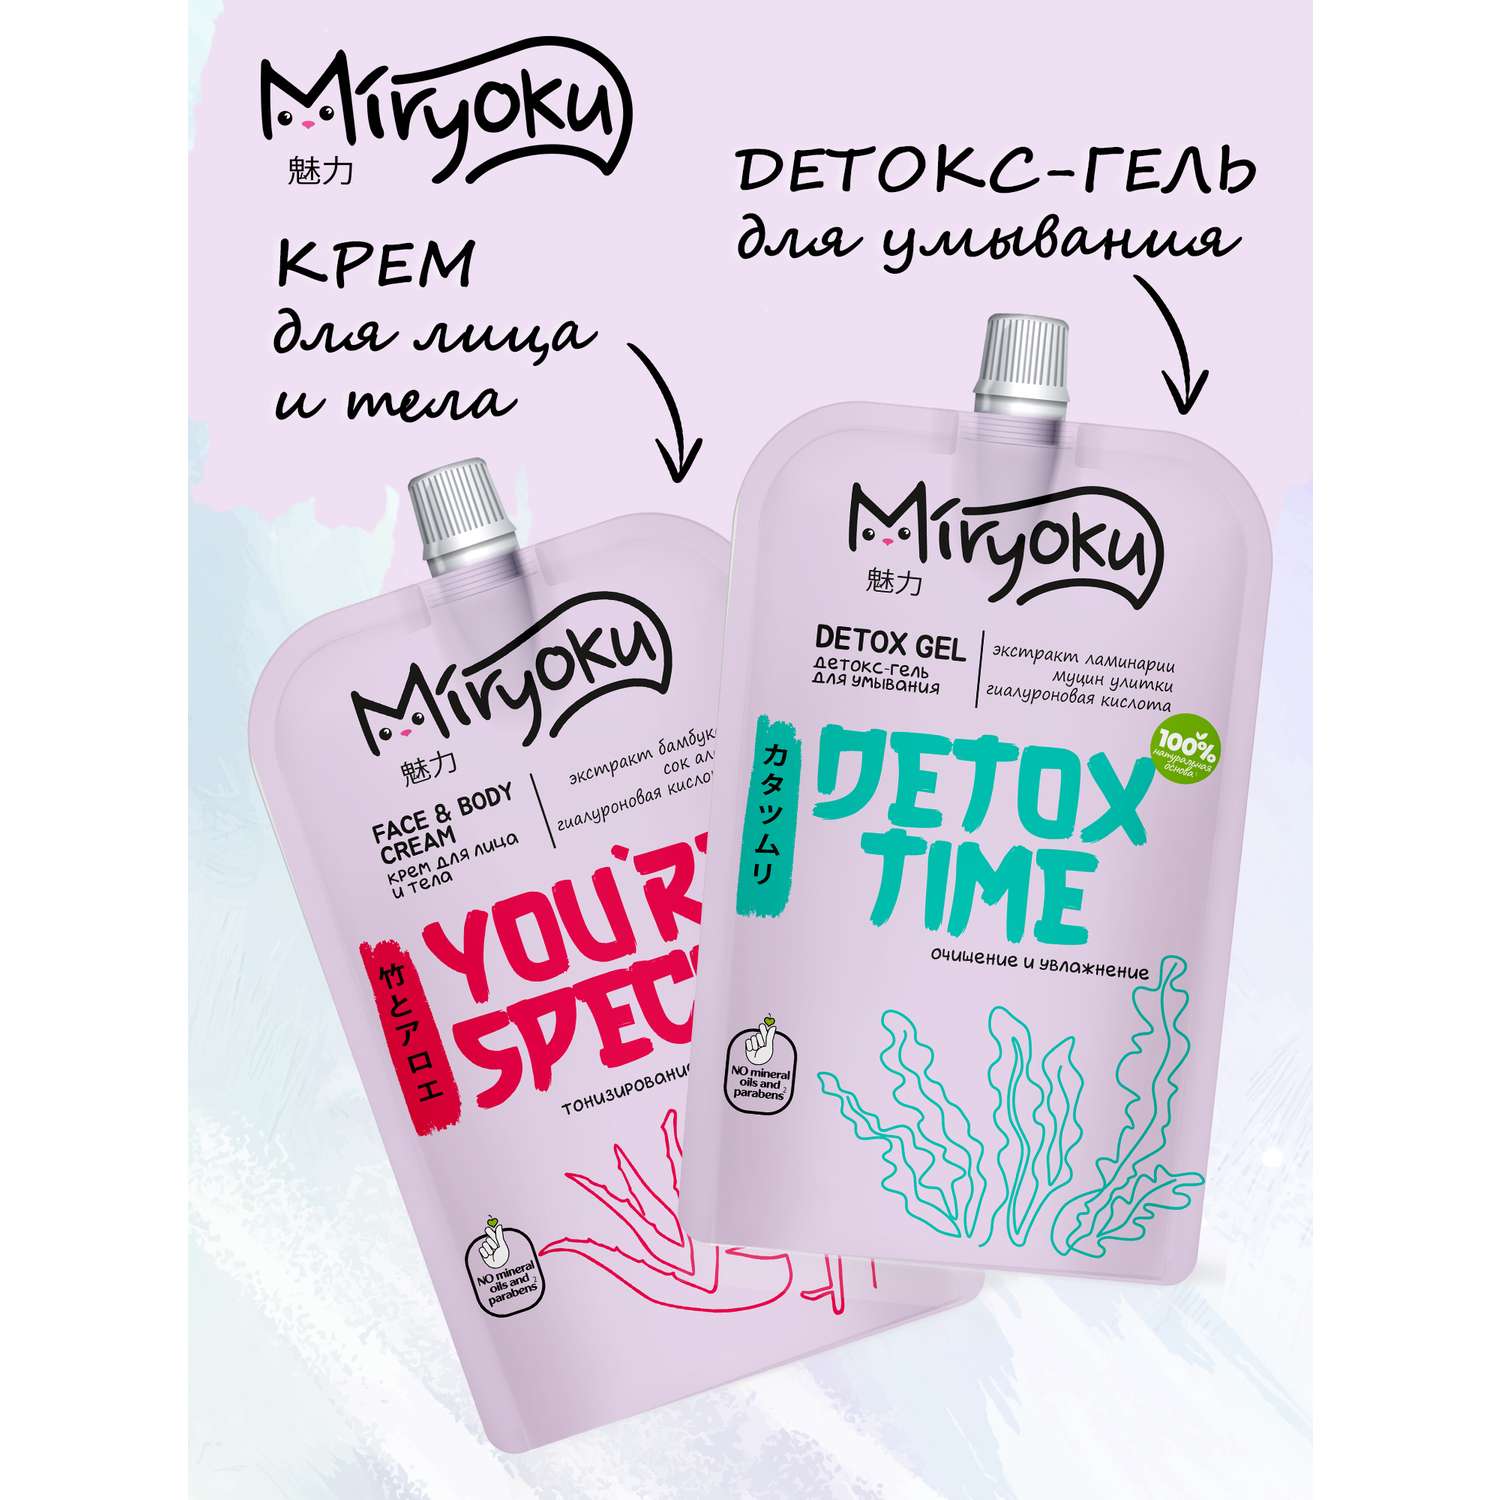 Набор MIRYOKU Face Cream Detox Gel Крем для лица и детокс-гель - фото 2